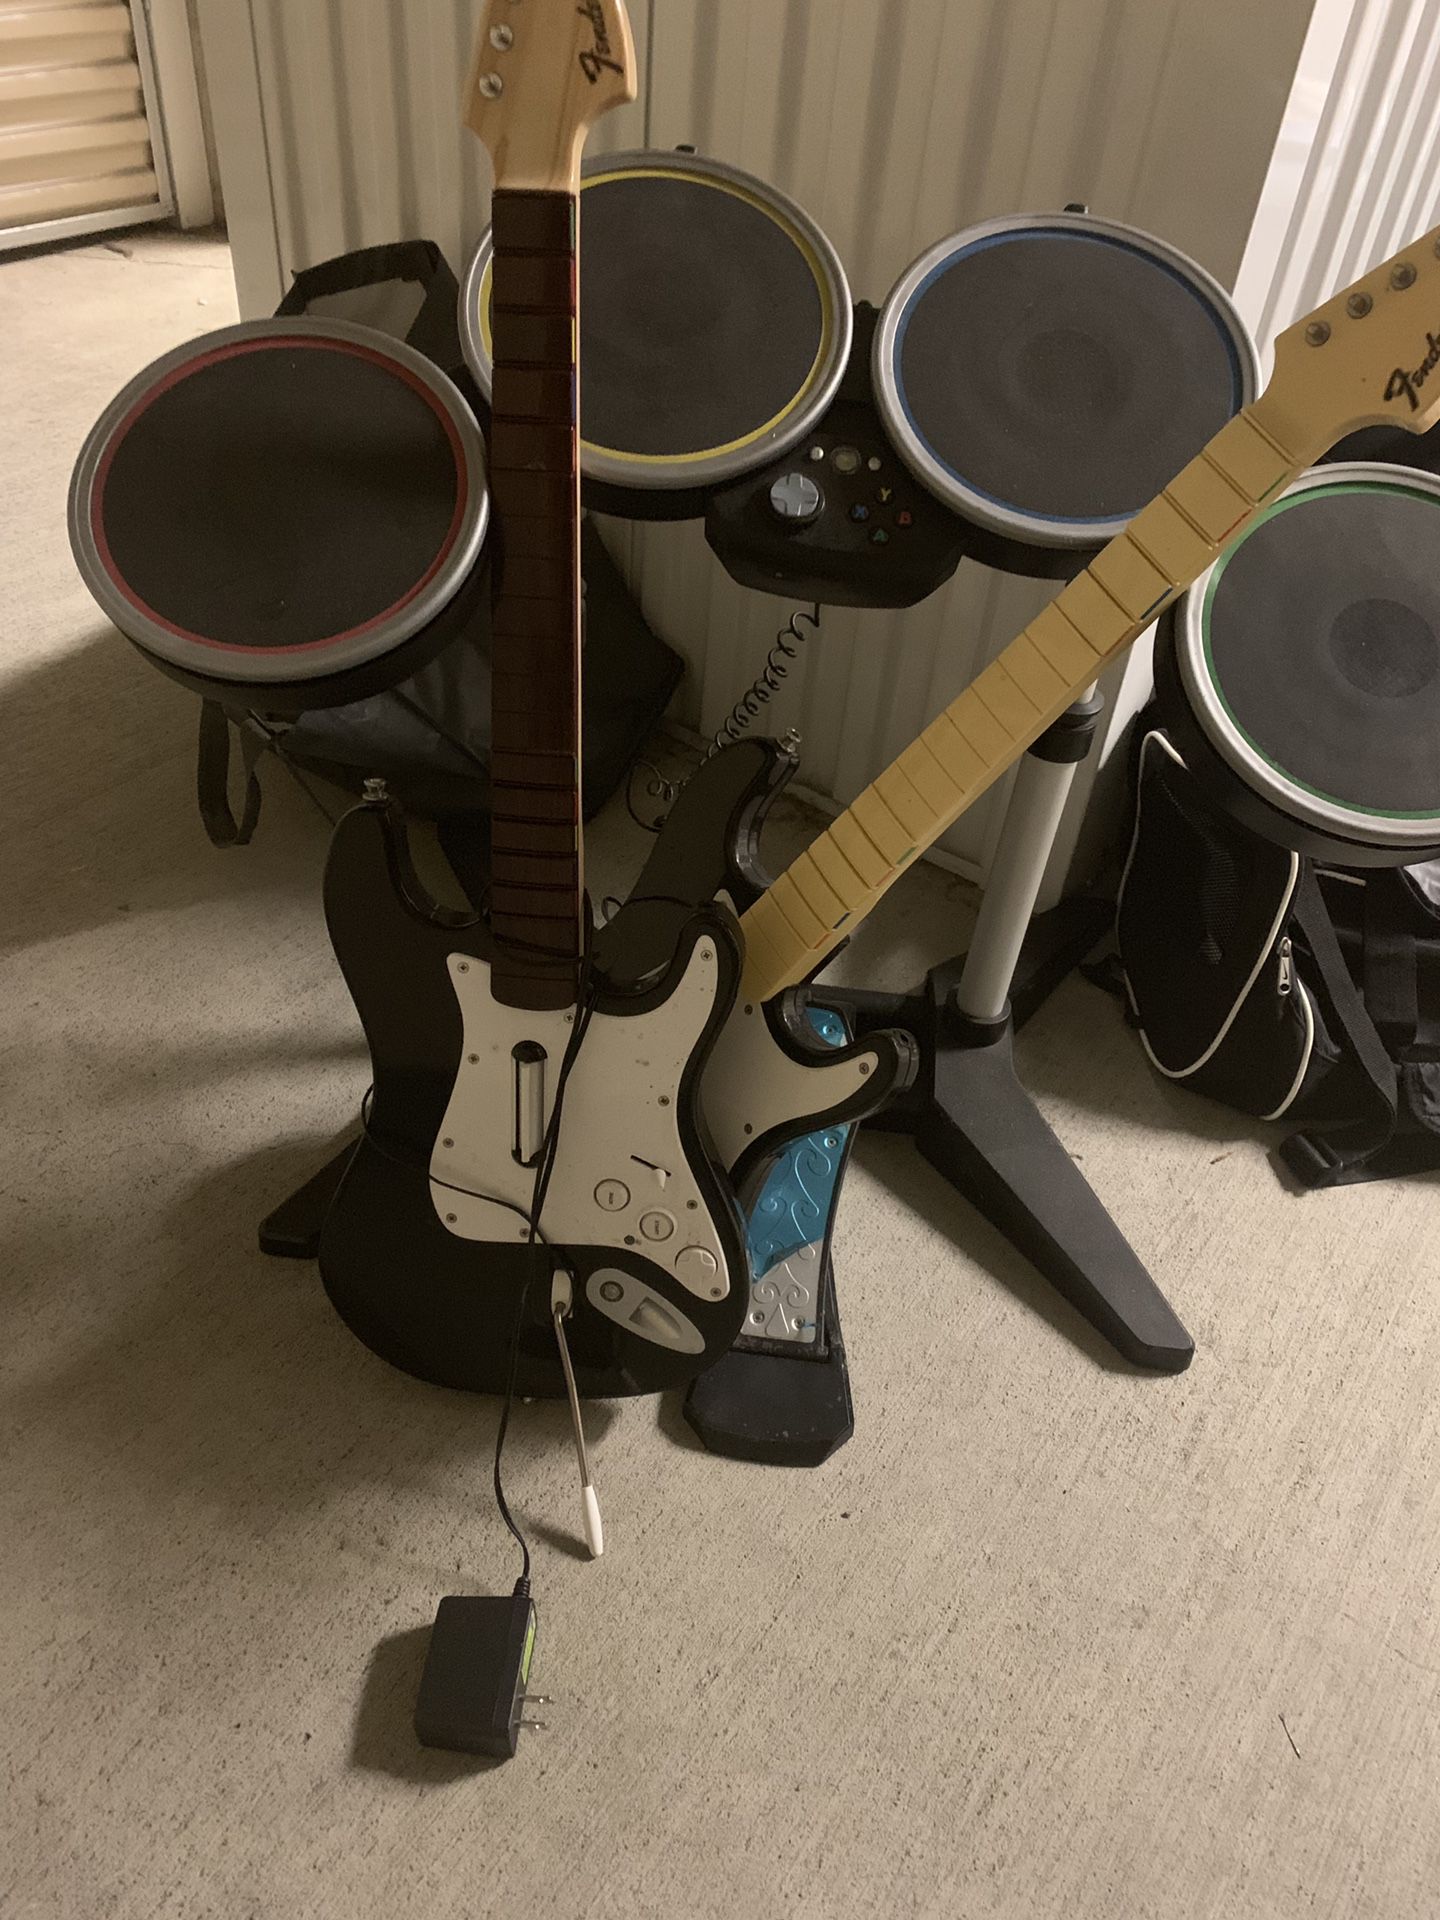 Full Rockband set w/ drum set and 2 guitars